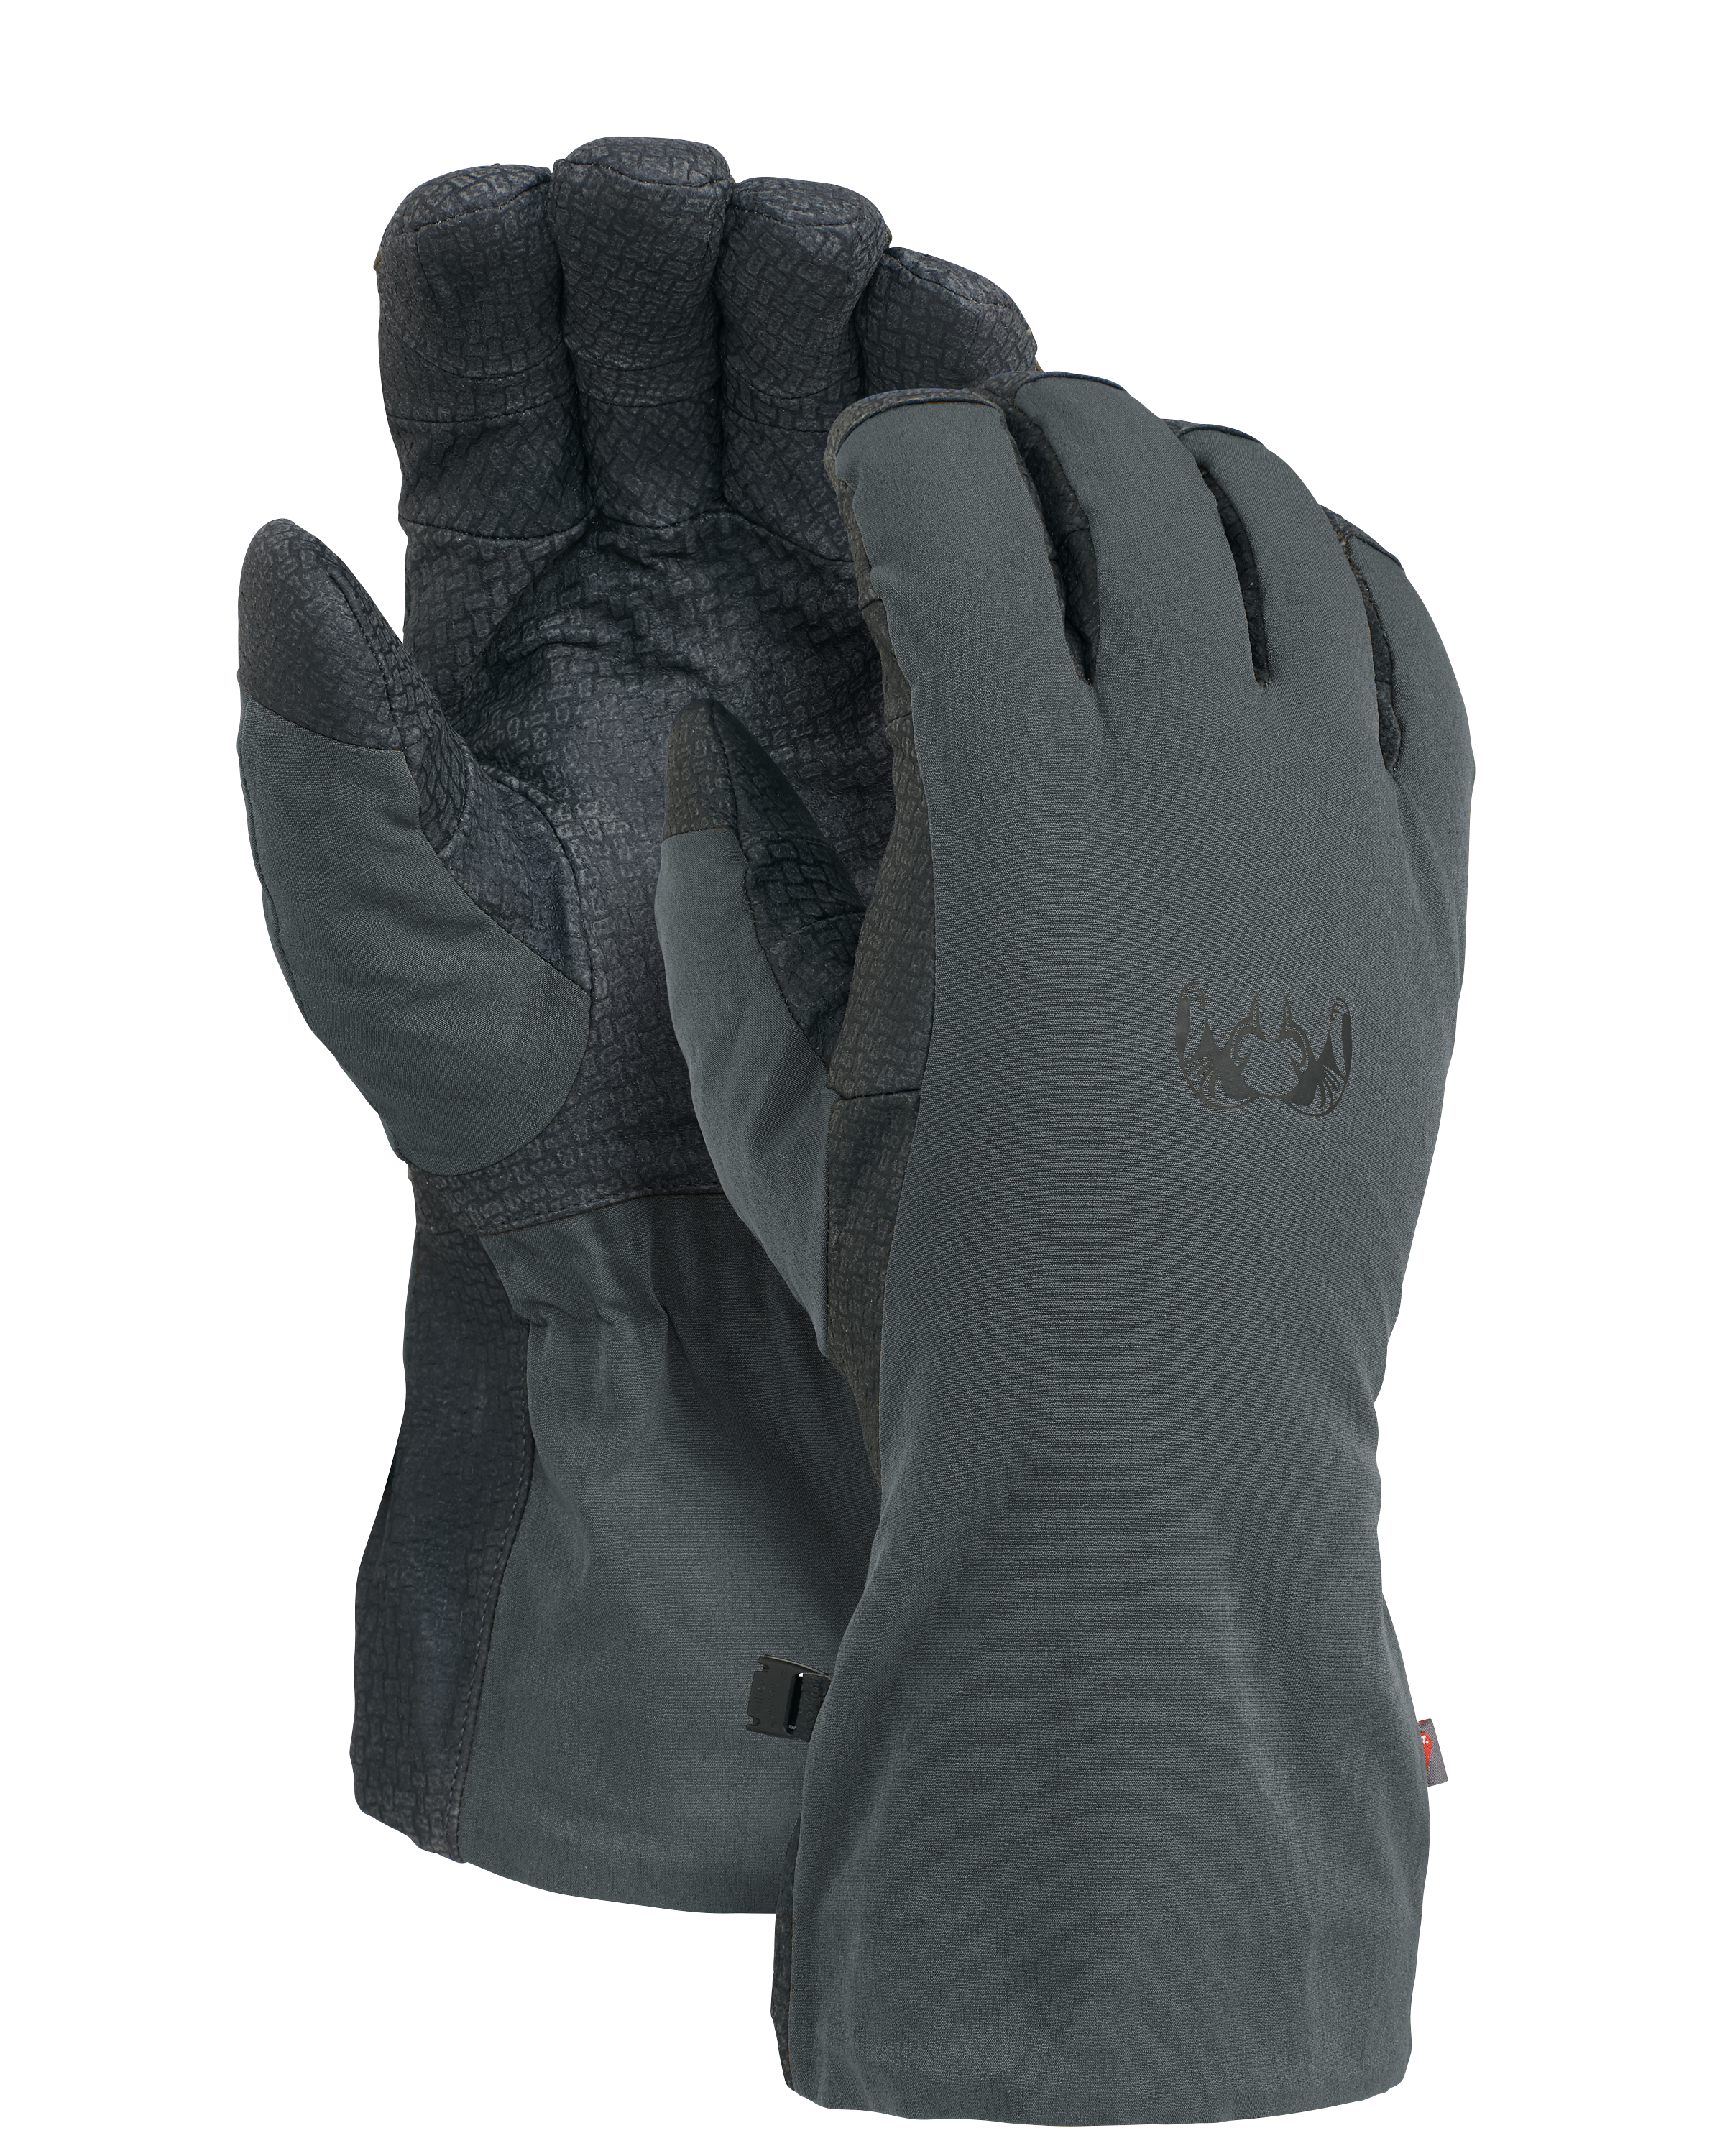 KUIU Northstar Hunting Glove in Gunmetal | Medium